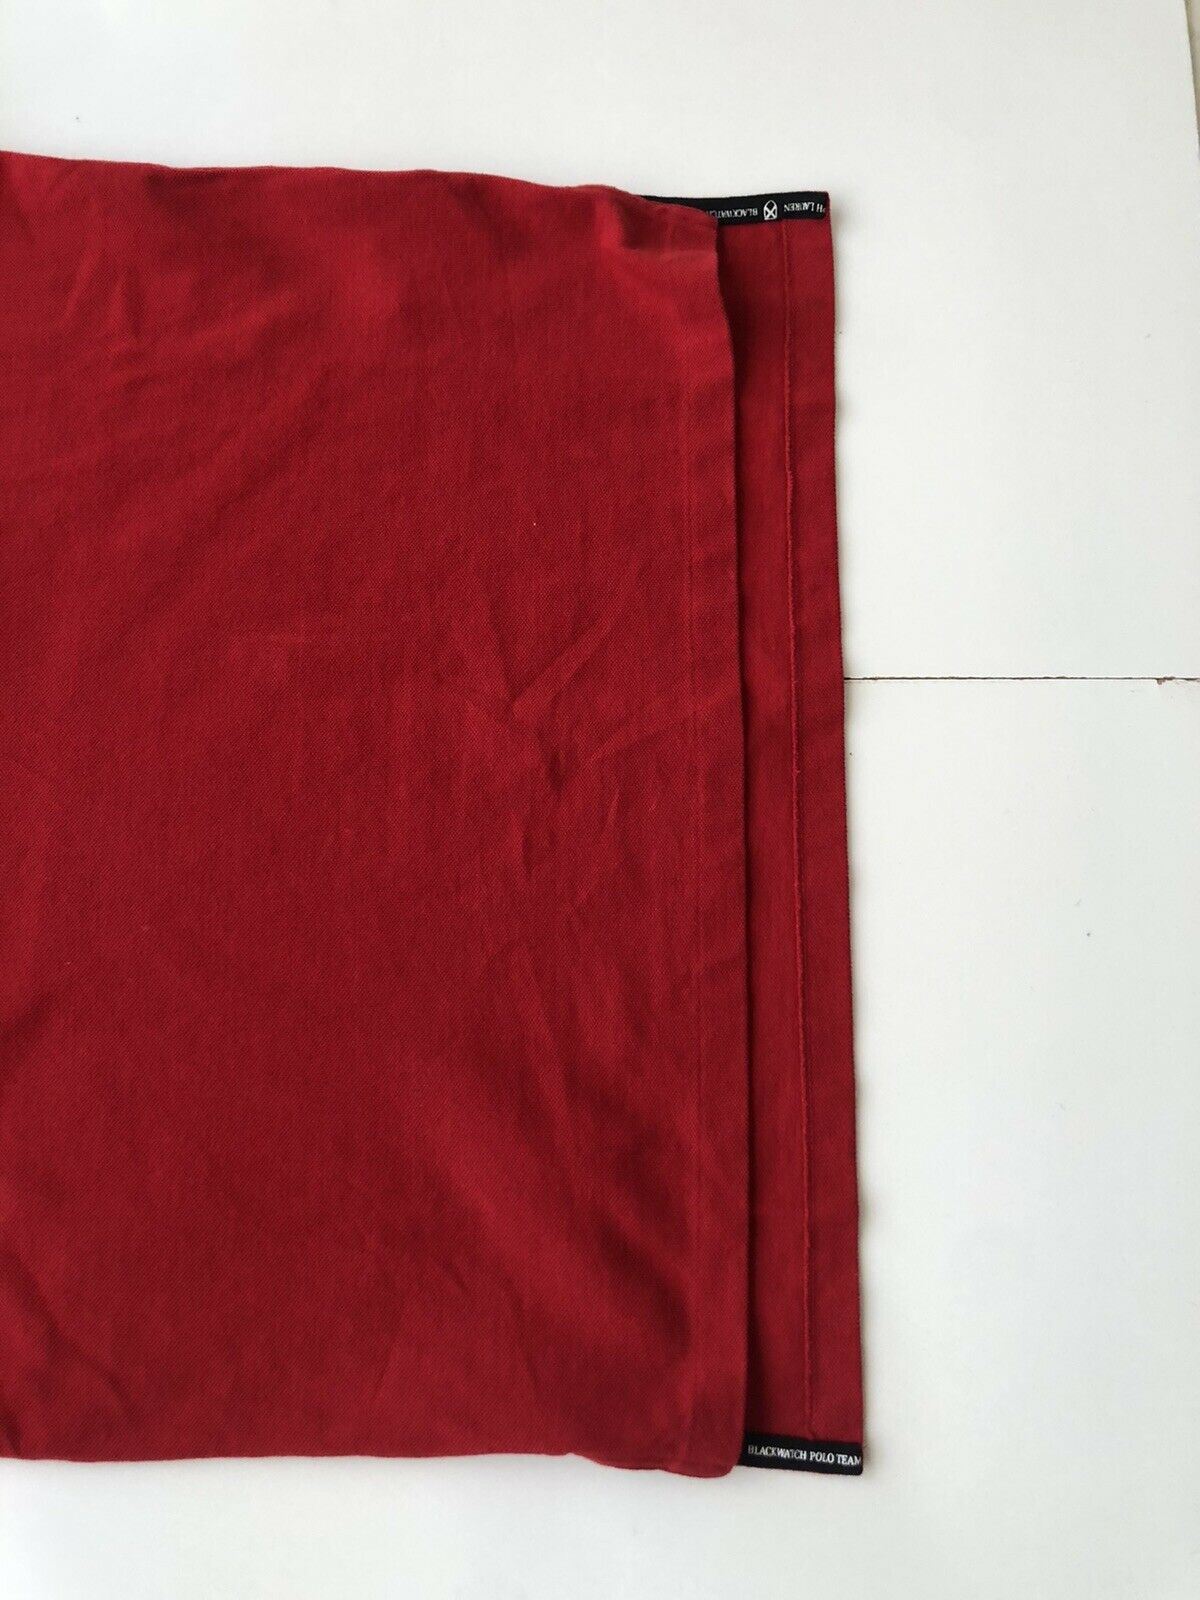 Красная рубашка-поло индивидуального кроя Polo Ralph Lauren Blackwatch L